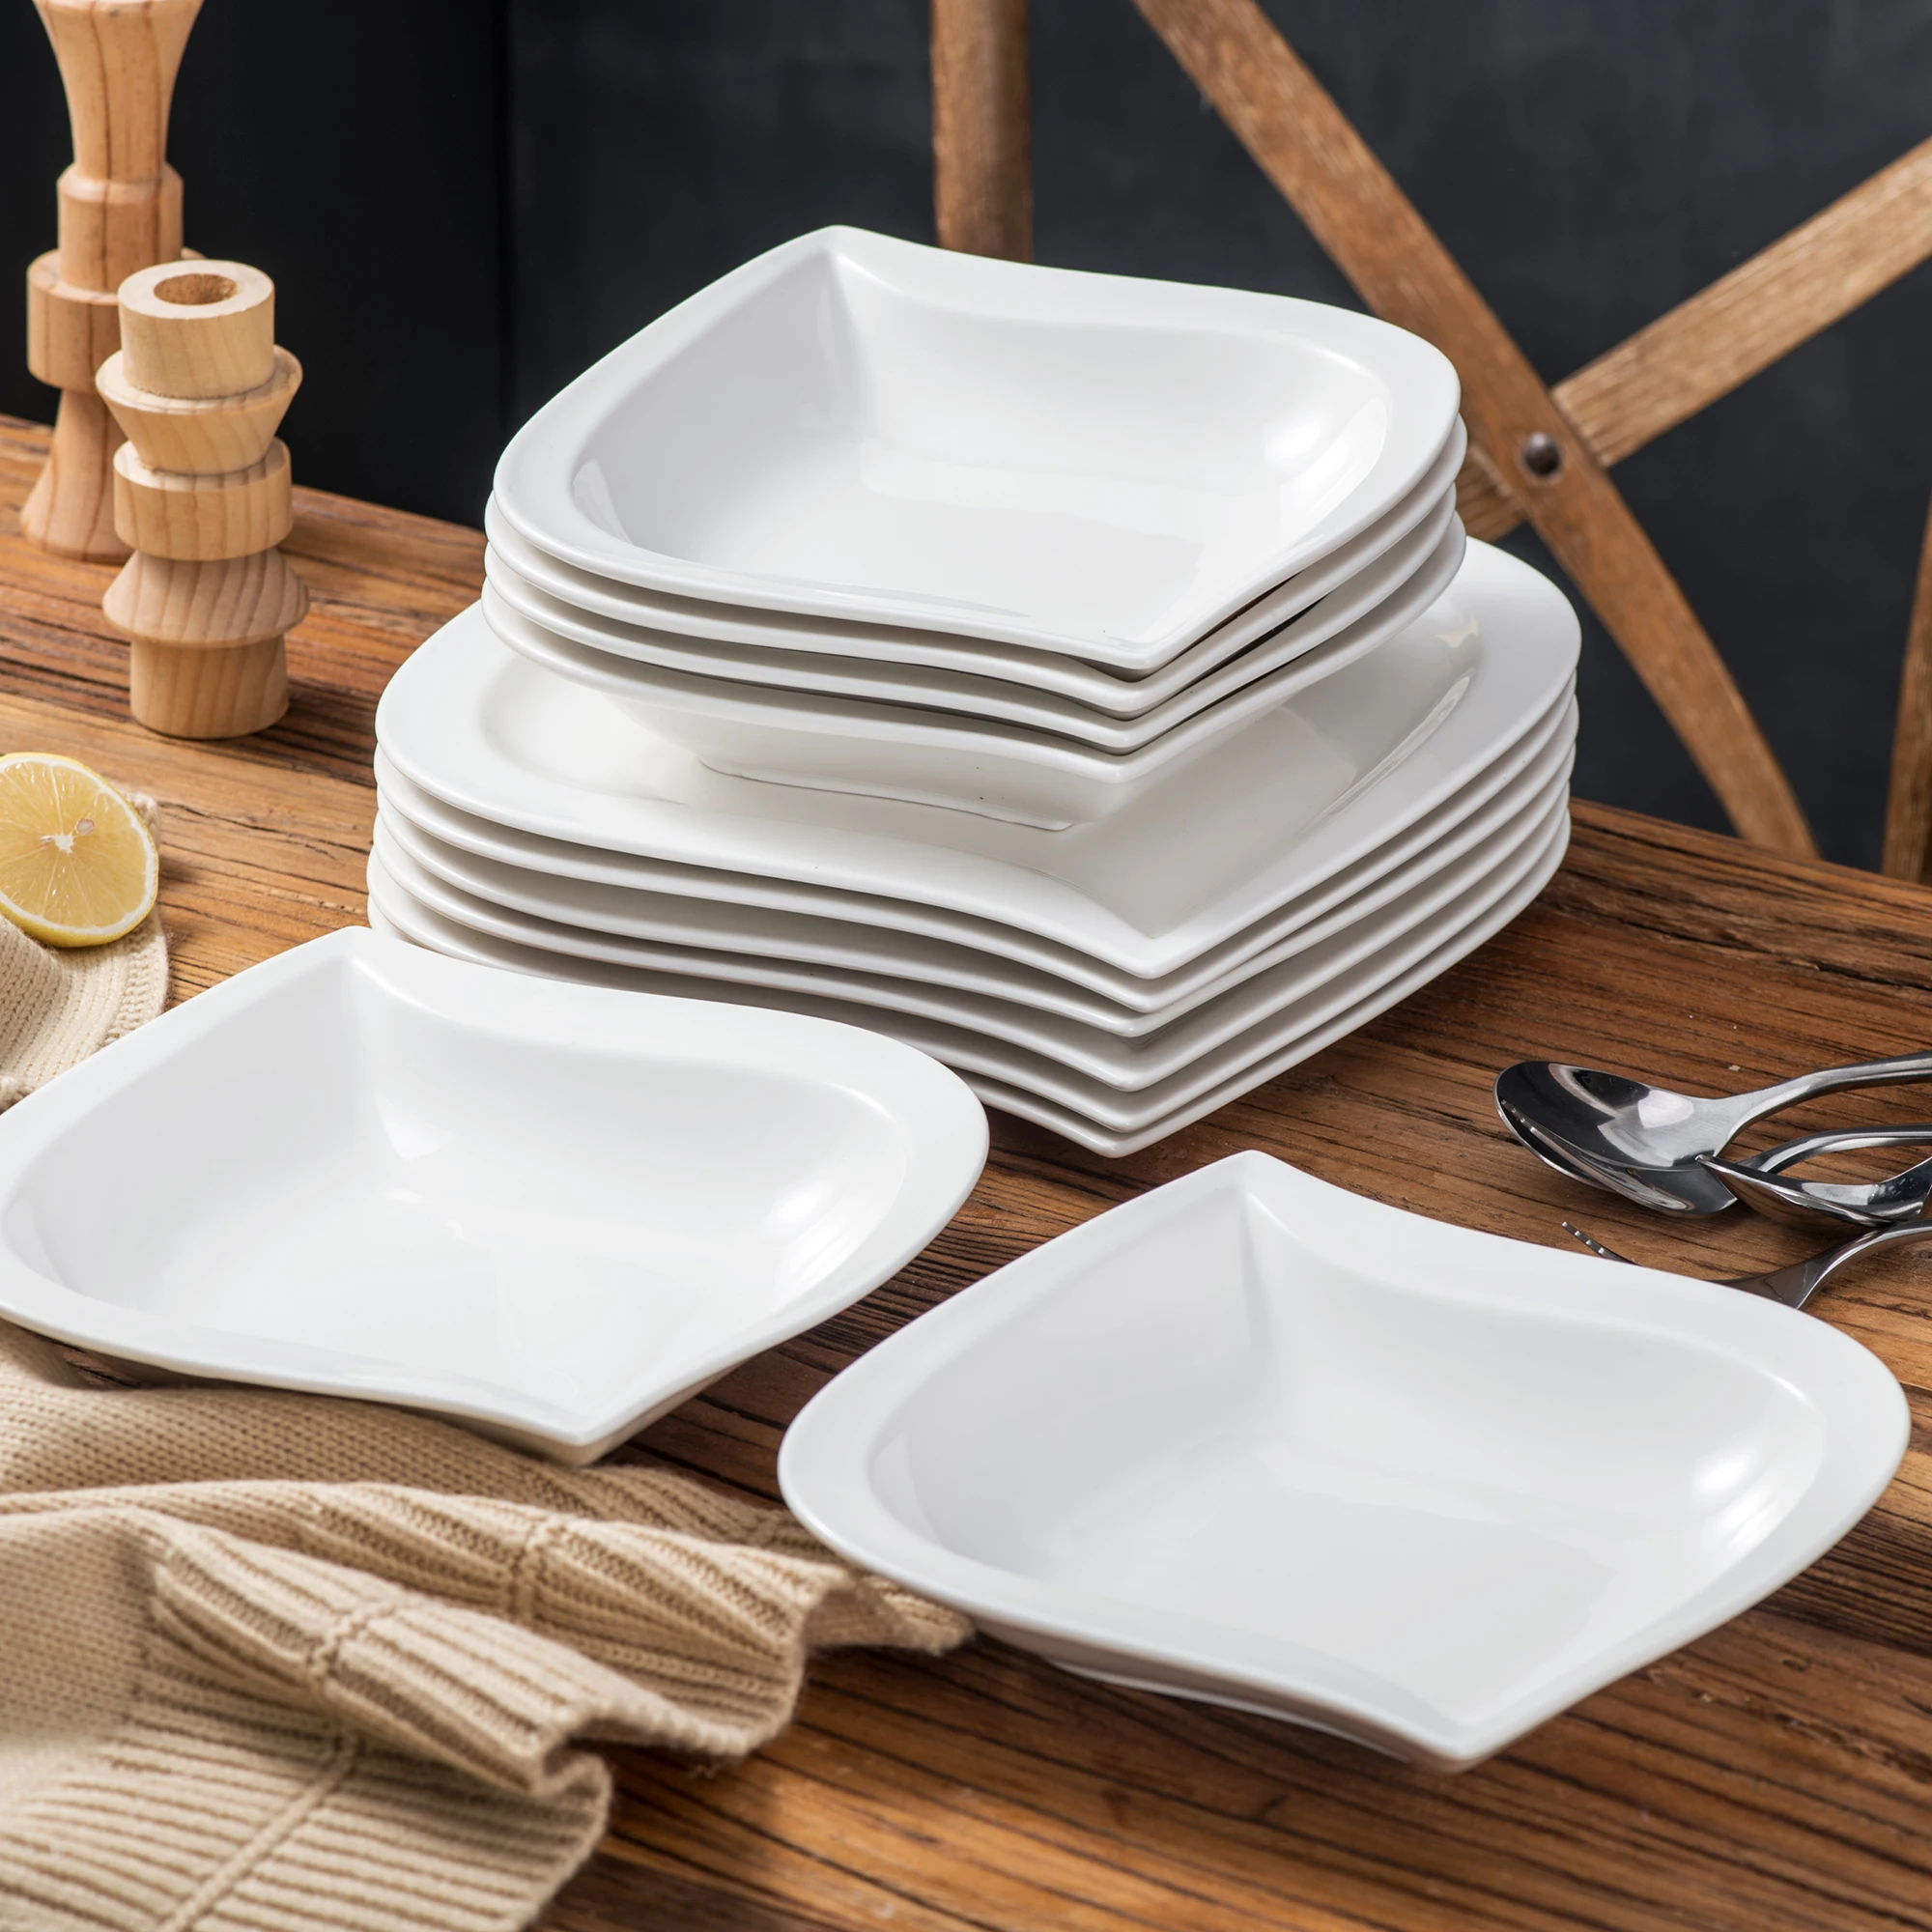 

Набор фарфоровых тарелок из 12 предметов с 6 тарелками для супа